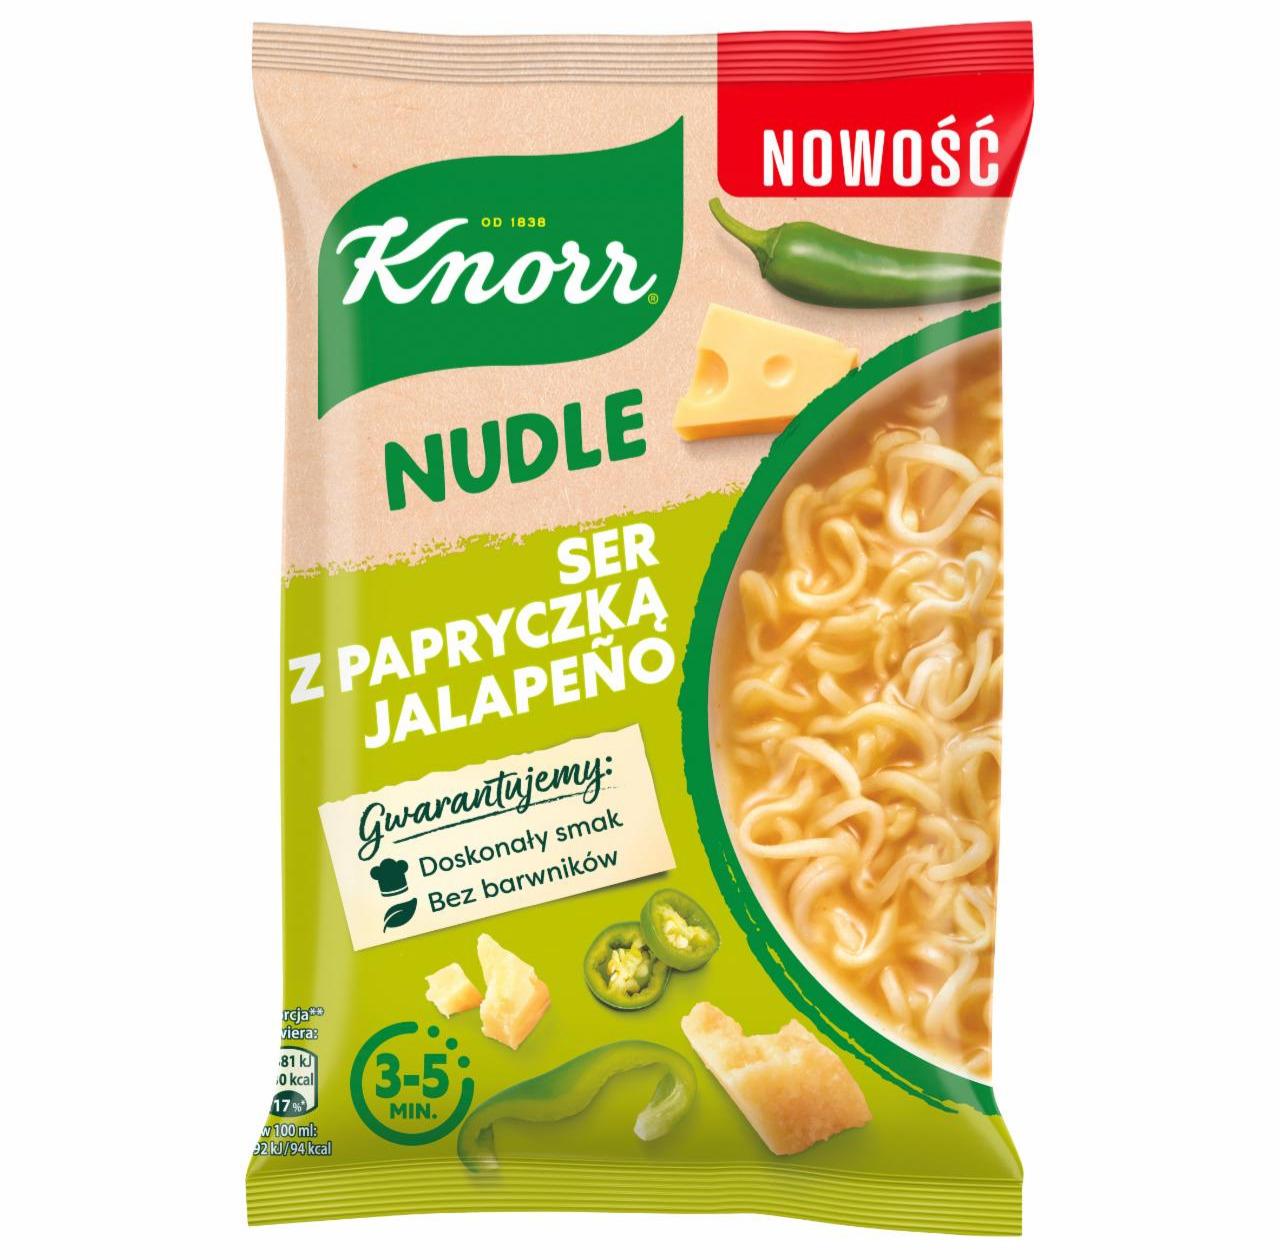 Zdjęcia - Nudle Ser z papryczką jalapeno Knorr